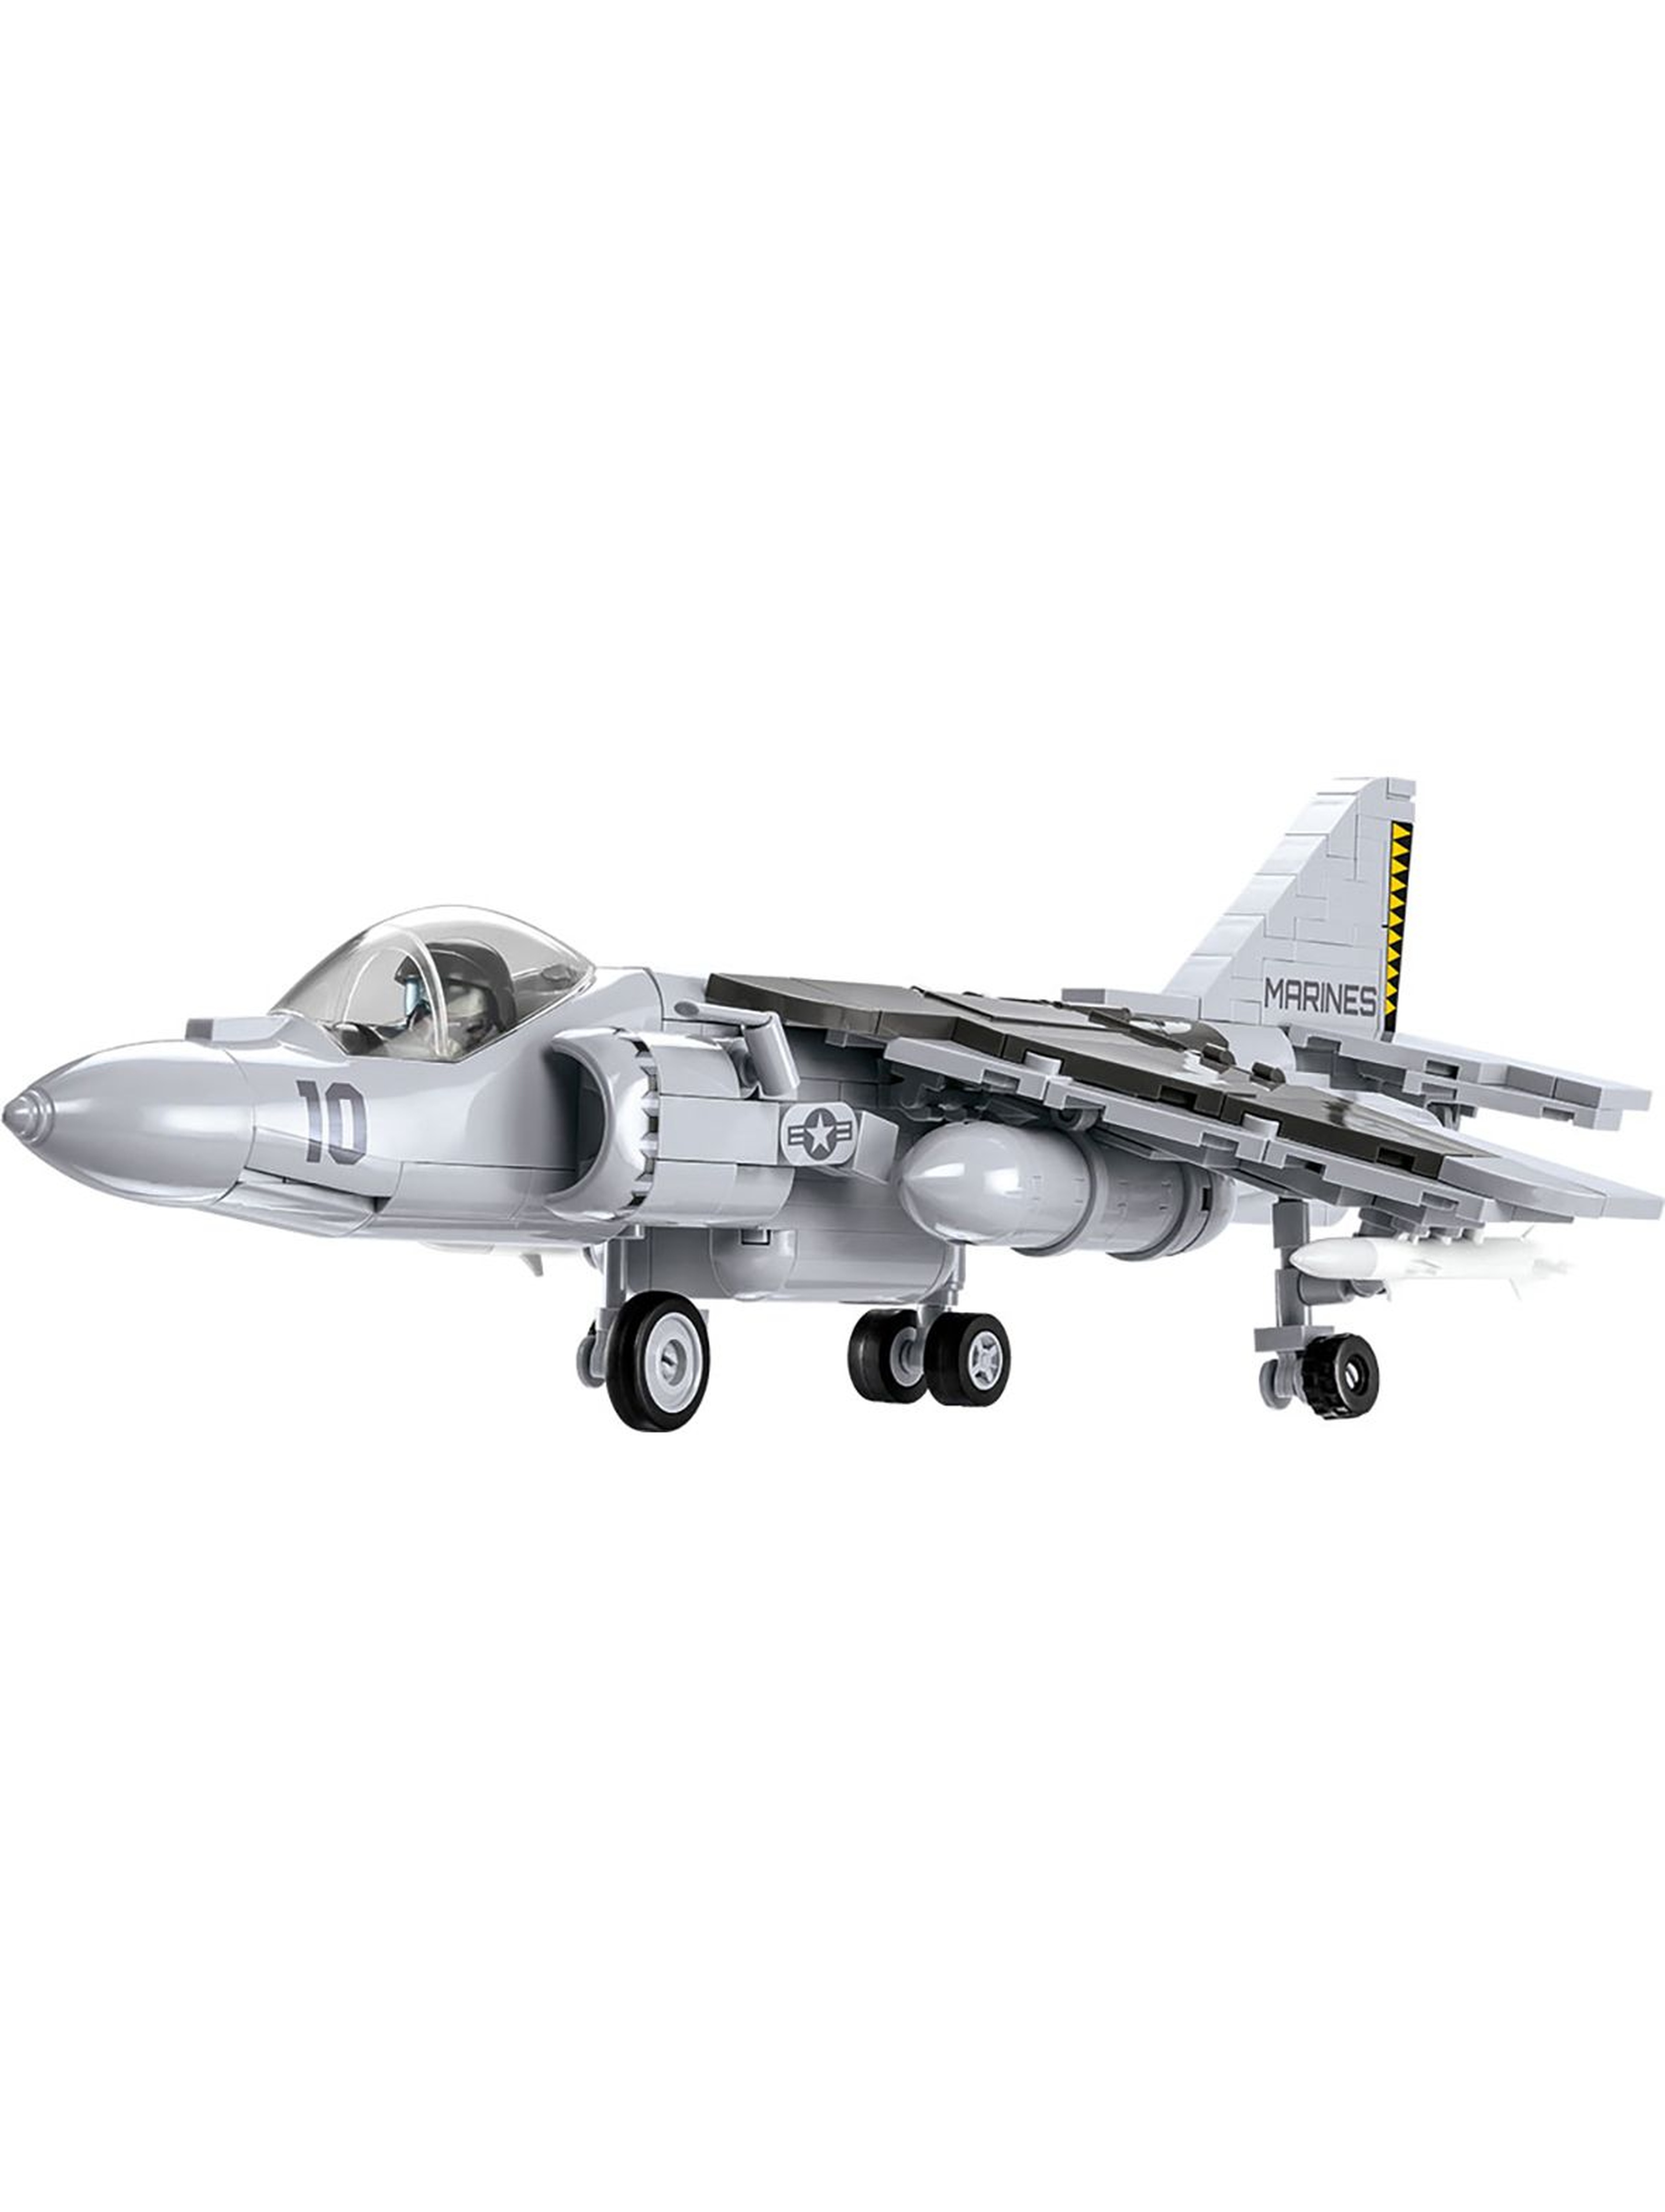 Klocki Cobi Armed Forces AV-8B Harrier II - 424 elementy